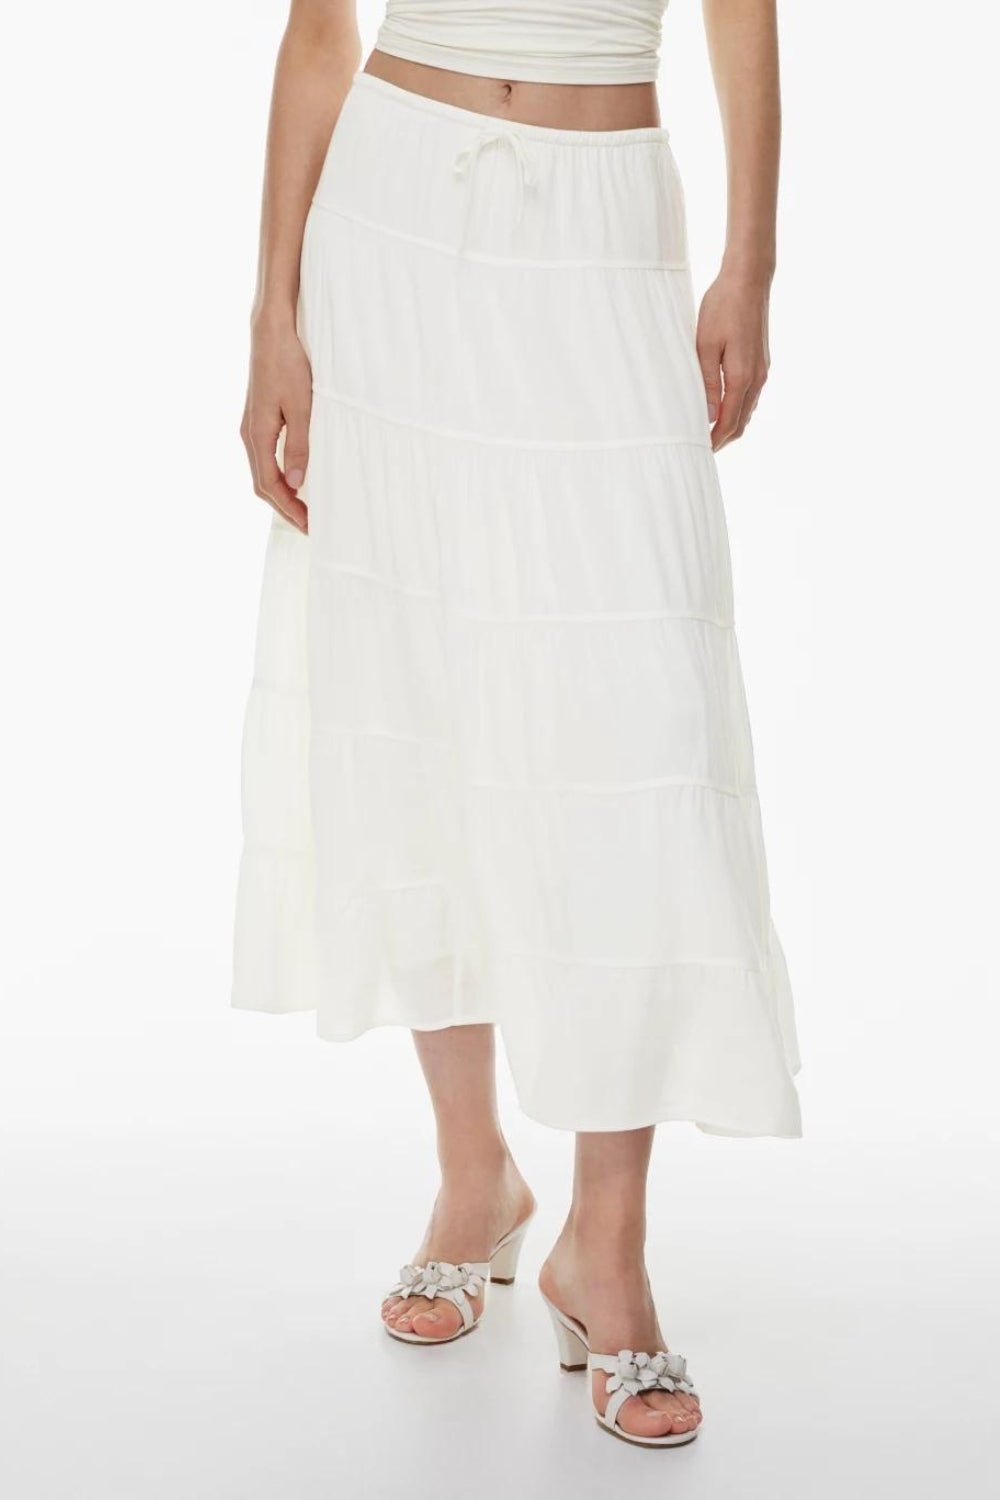 Amour White skirt